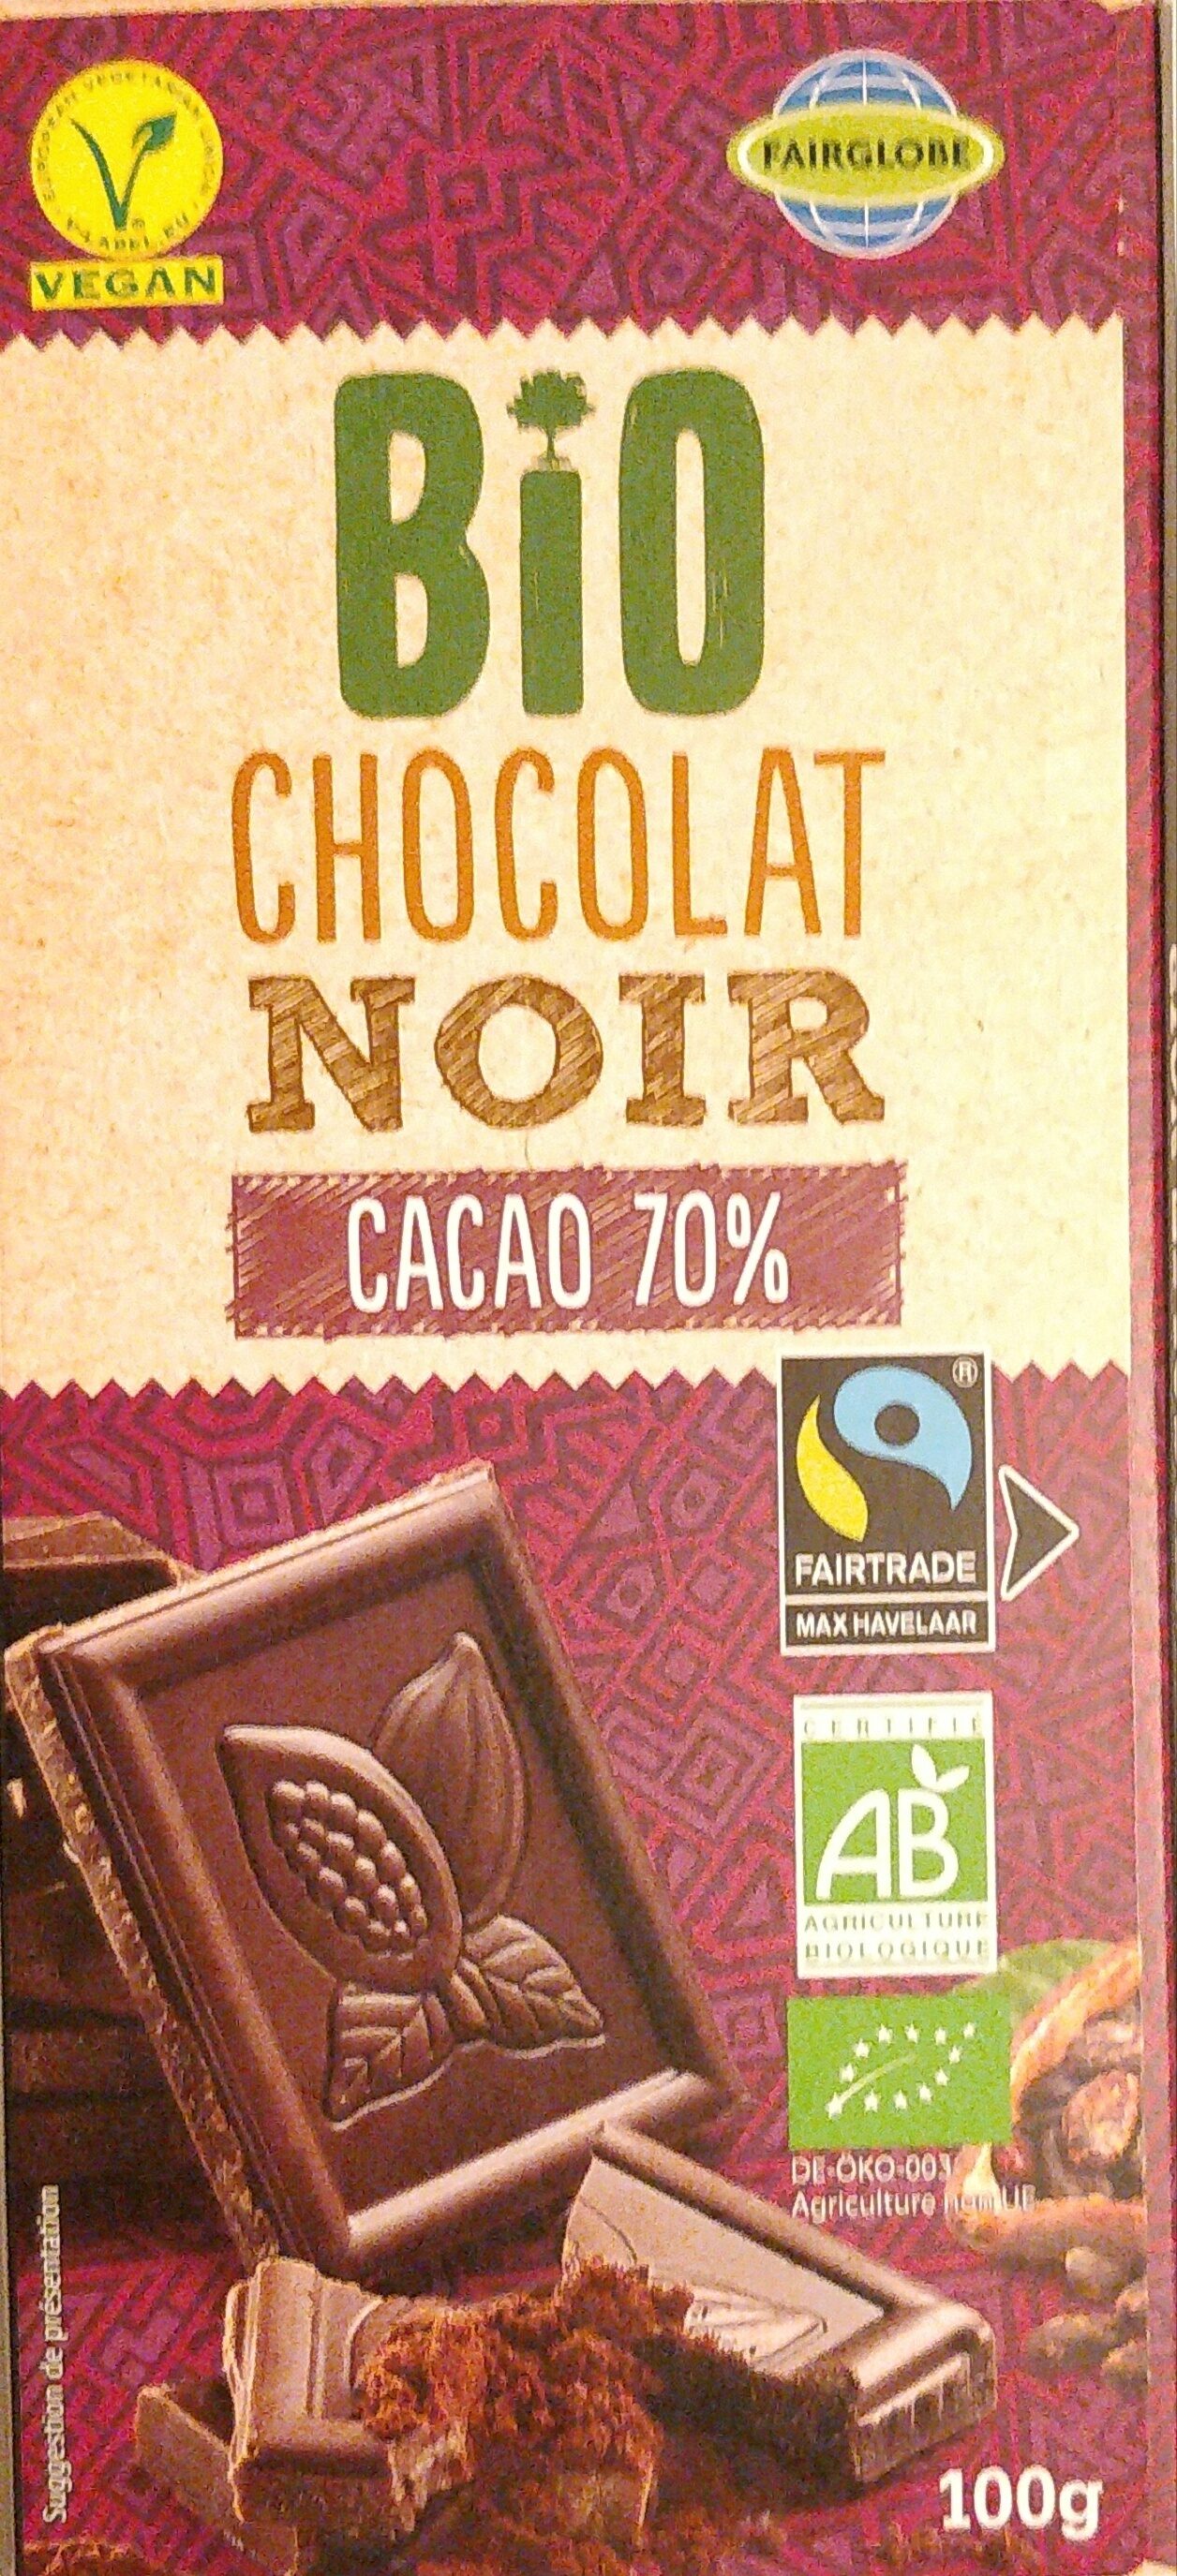 Chocolat noir bio cacao 70% - Producte - fr